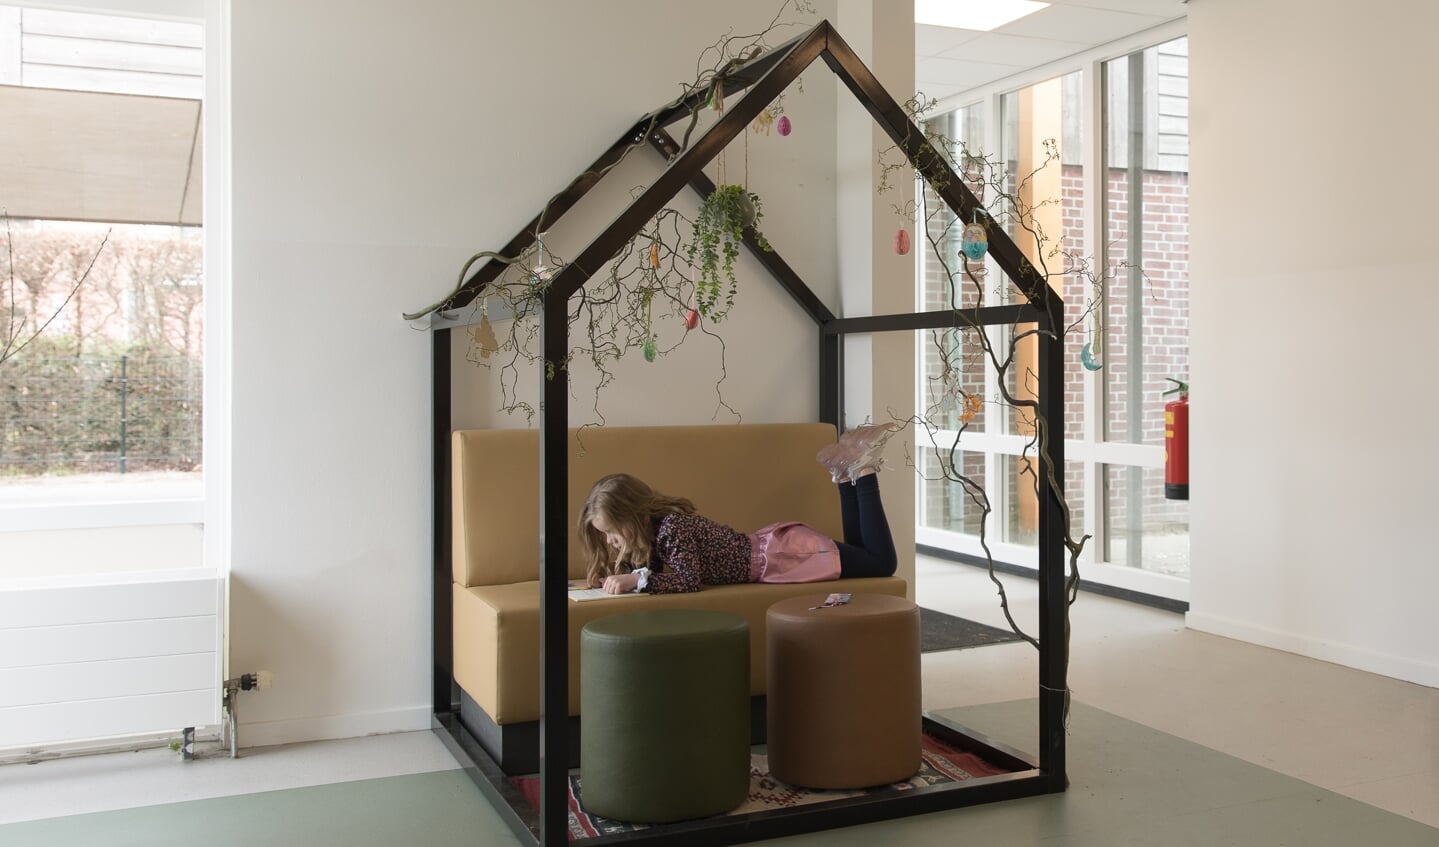 Leerlingen voelen zich thuis in het nieuwe interieur van De Keikamp. Foto: Christian Meuleman